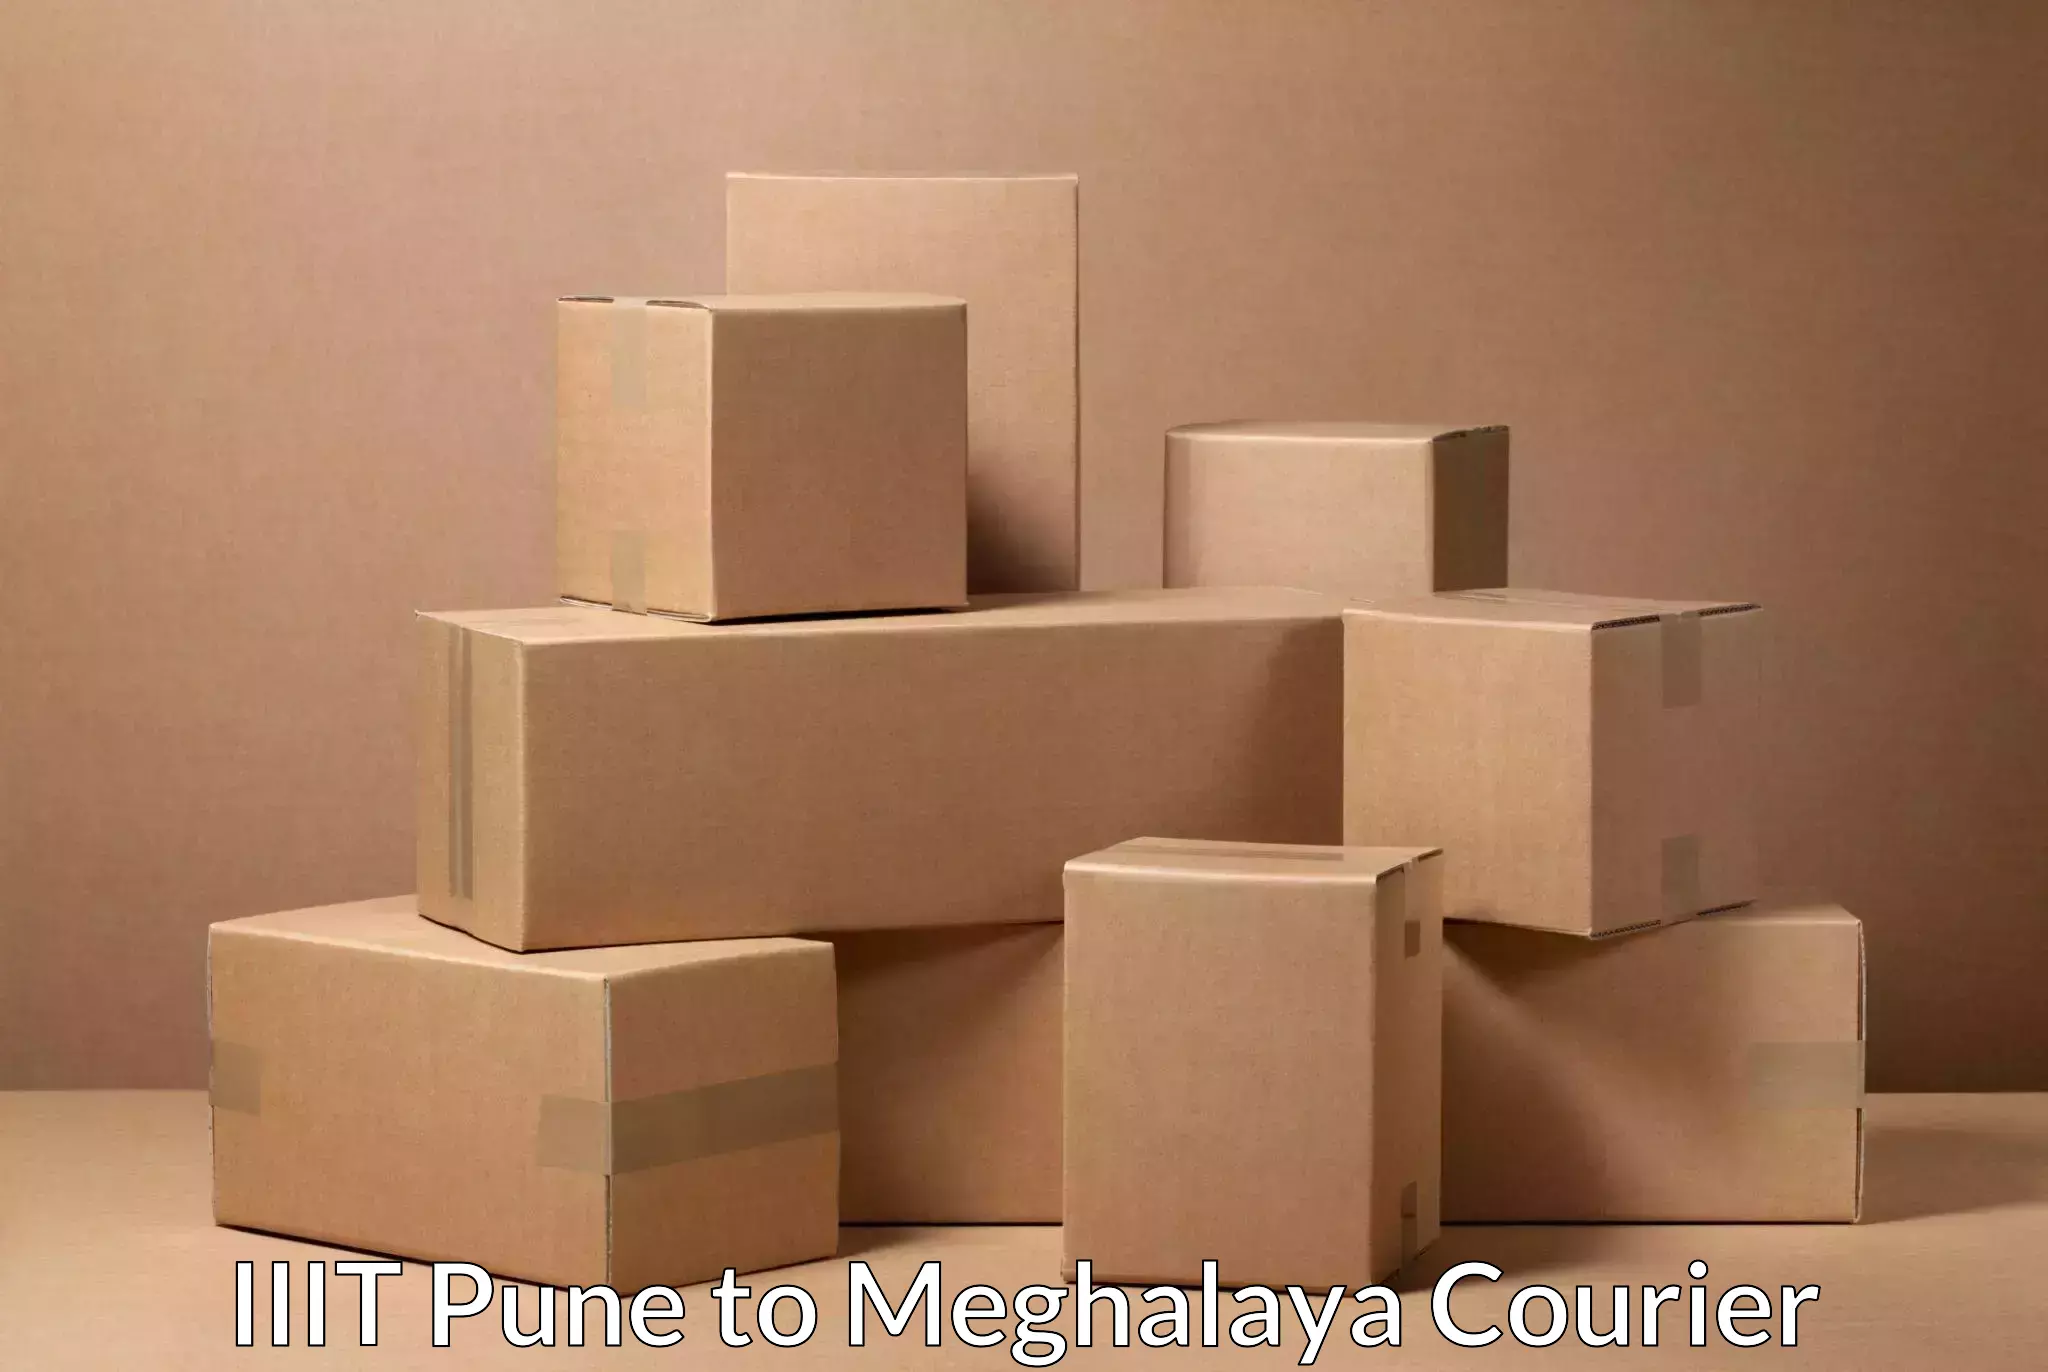 Pharmaceutical courier IIIT Pune to Meghalaya